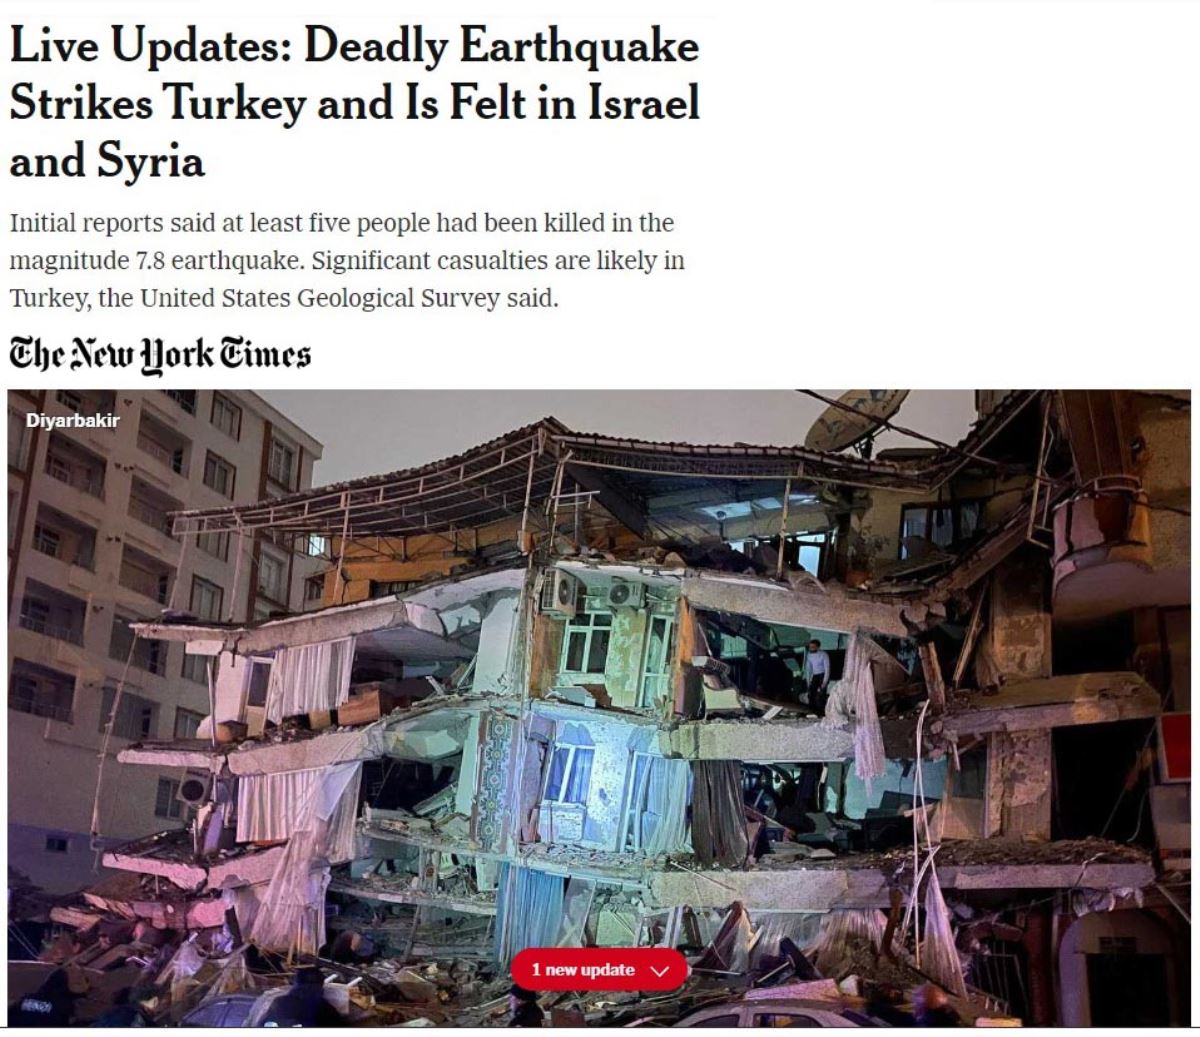 <p>NY Times, "Canlı Güncellemeler: <strong>Ölümcül Deprem Türkiye'yi Çarptı ve İsrail ve Suriye'de Hissedildi 7.8 büyüklüğündeki depremde ilk belirlemelere göre çok sayıda kişi hayatını kaybetti"</strong> ifadelerine yer verirken, "ABD Jeoloji Araştırma Merkezi, Türkiye'de önemli kayıpların olma ihtimalinin yüksek olduğunu duyurdu" denildi.</p>